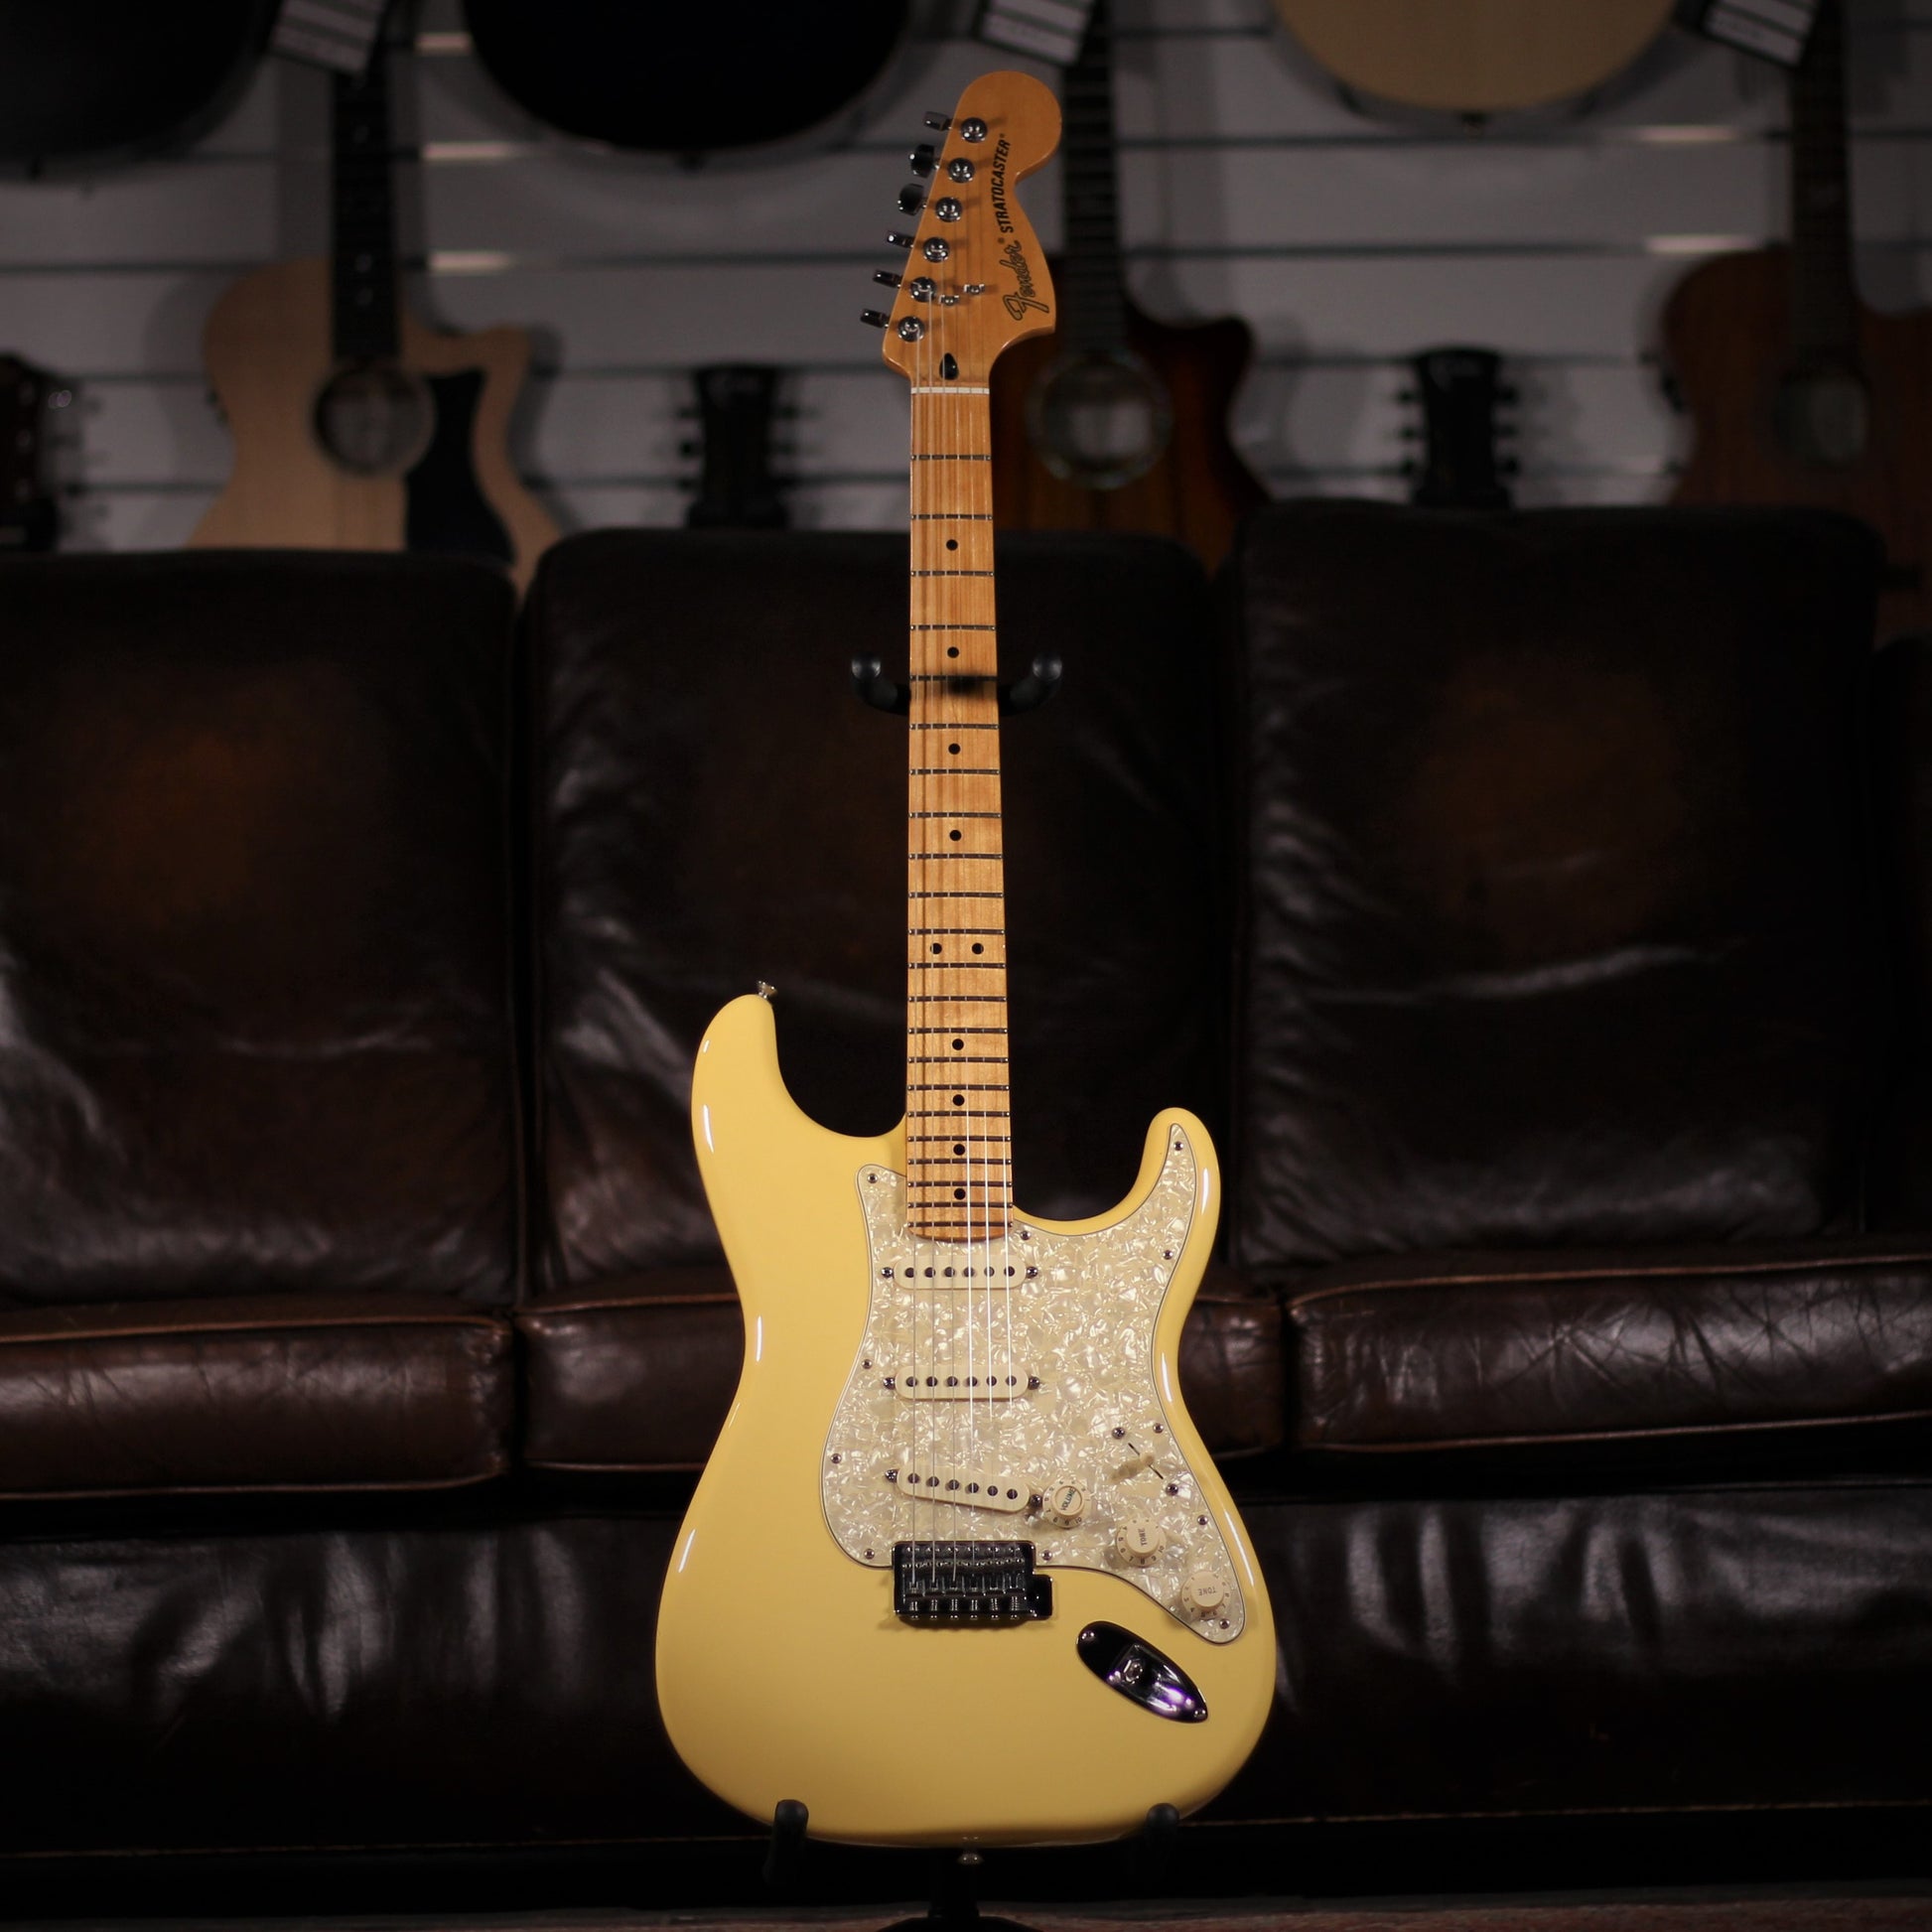 USED - Fender Roadhouse Stratocaster full